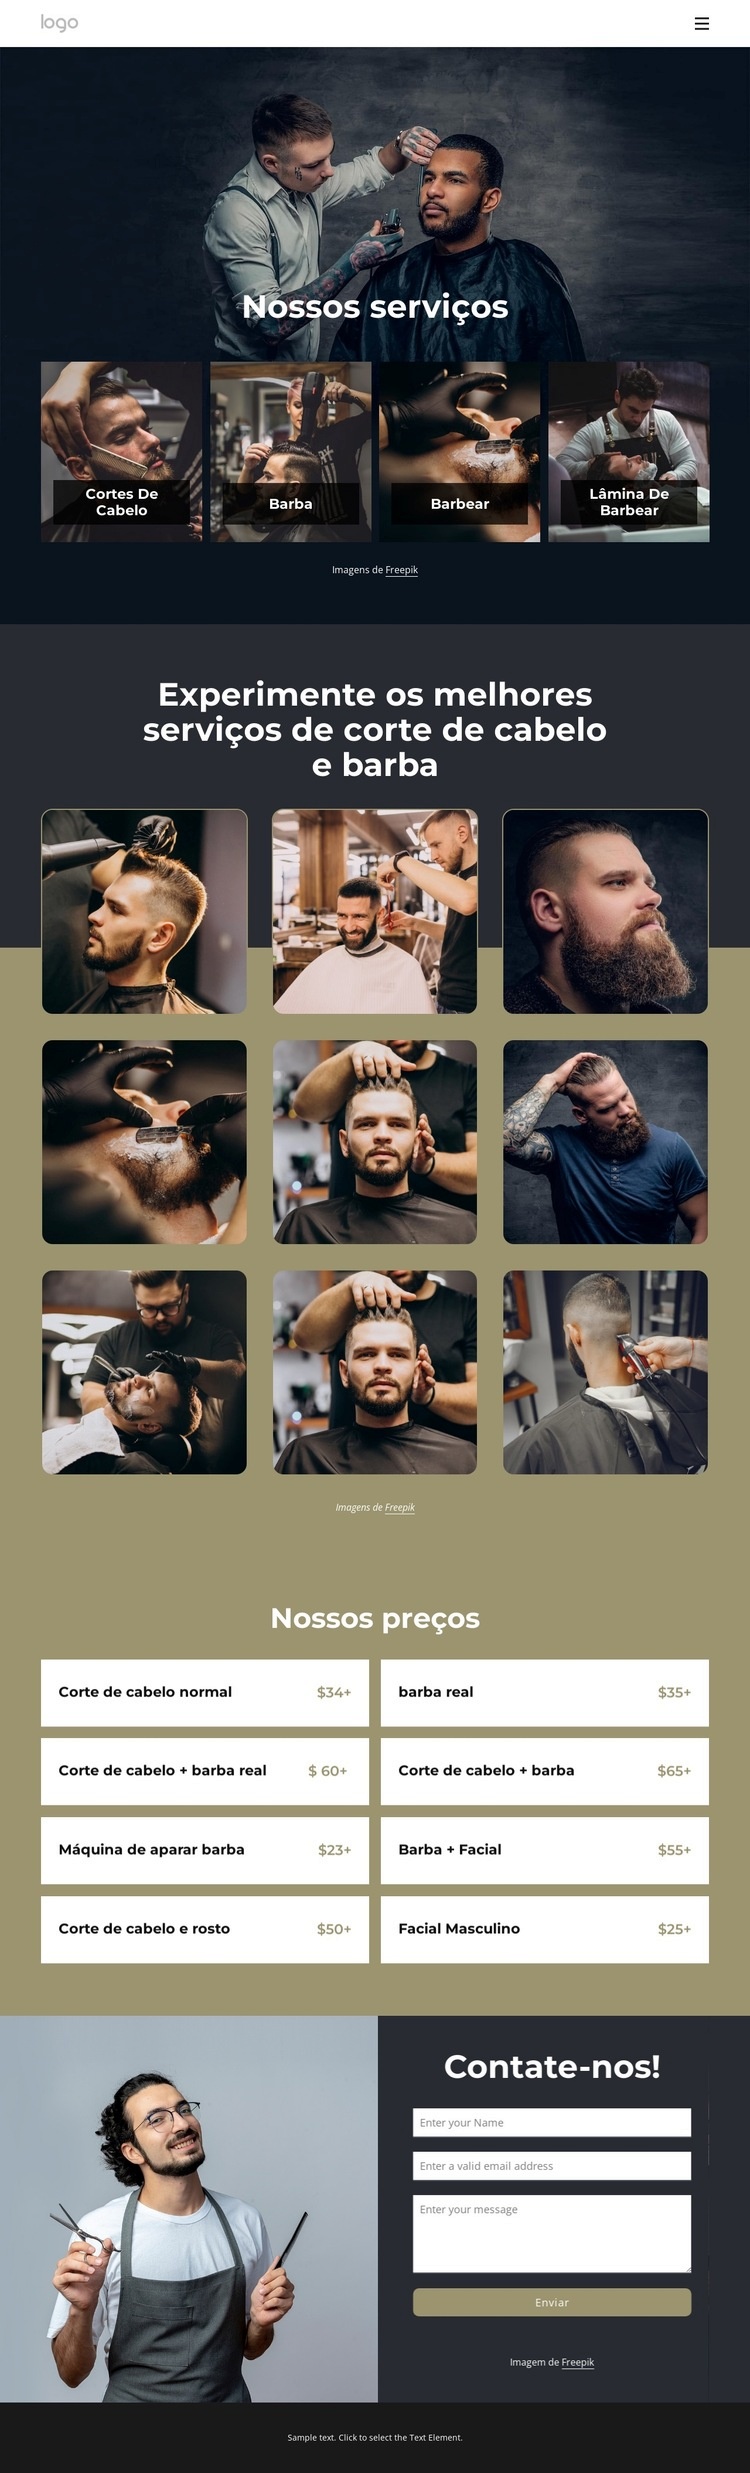 Os melhores serviços de corte de cabelo e barba Modelo de uma página